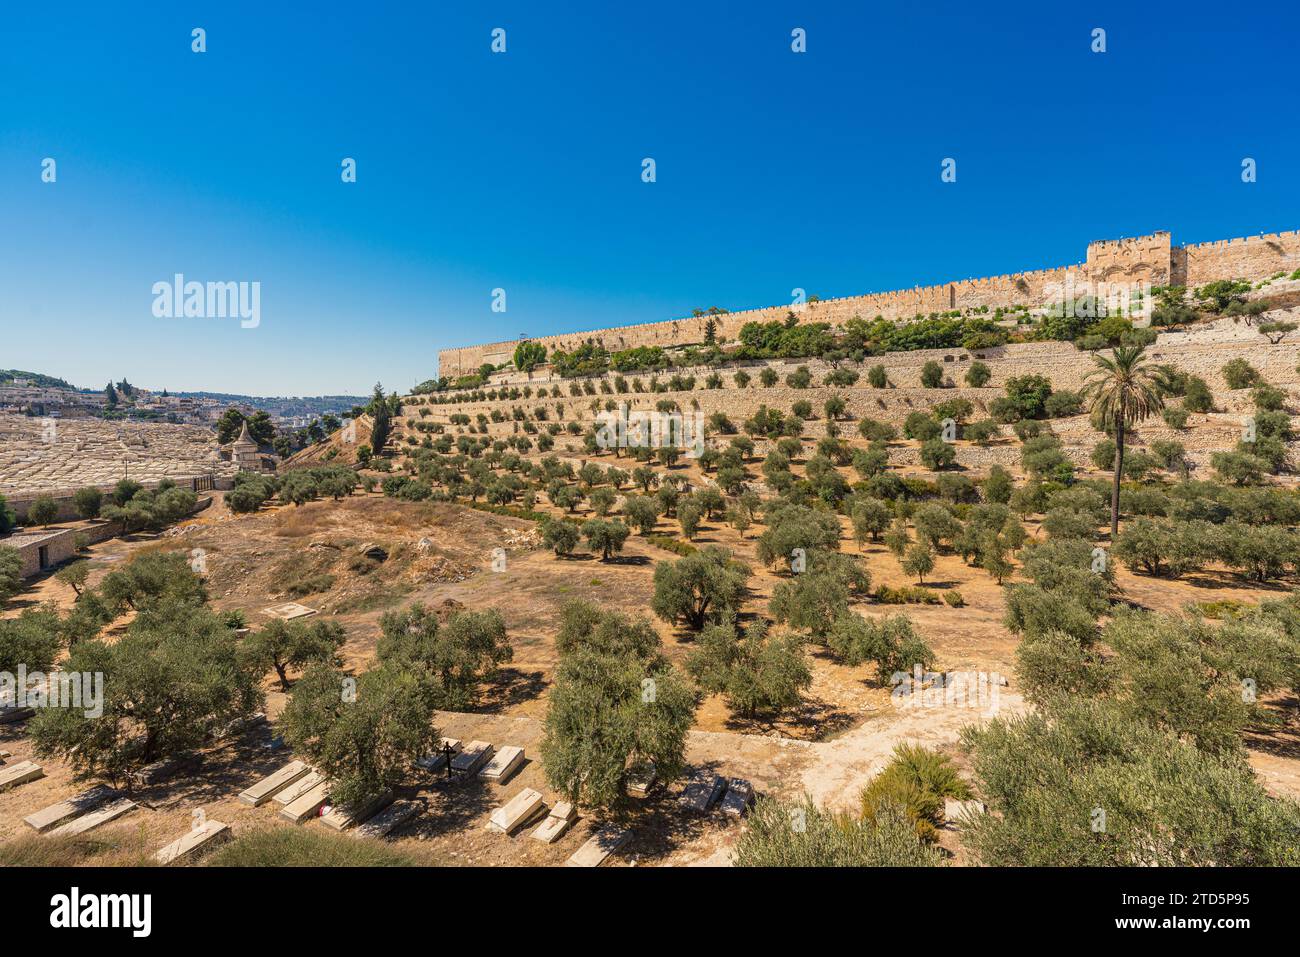 Vue panoramique de la vallée de Kidron avec des oliviers, un cimetière et la porte d'or dans le Mont du Temple de Jérusalem Banque D'Images